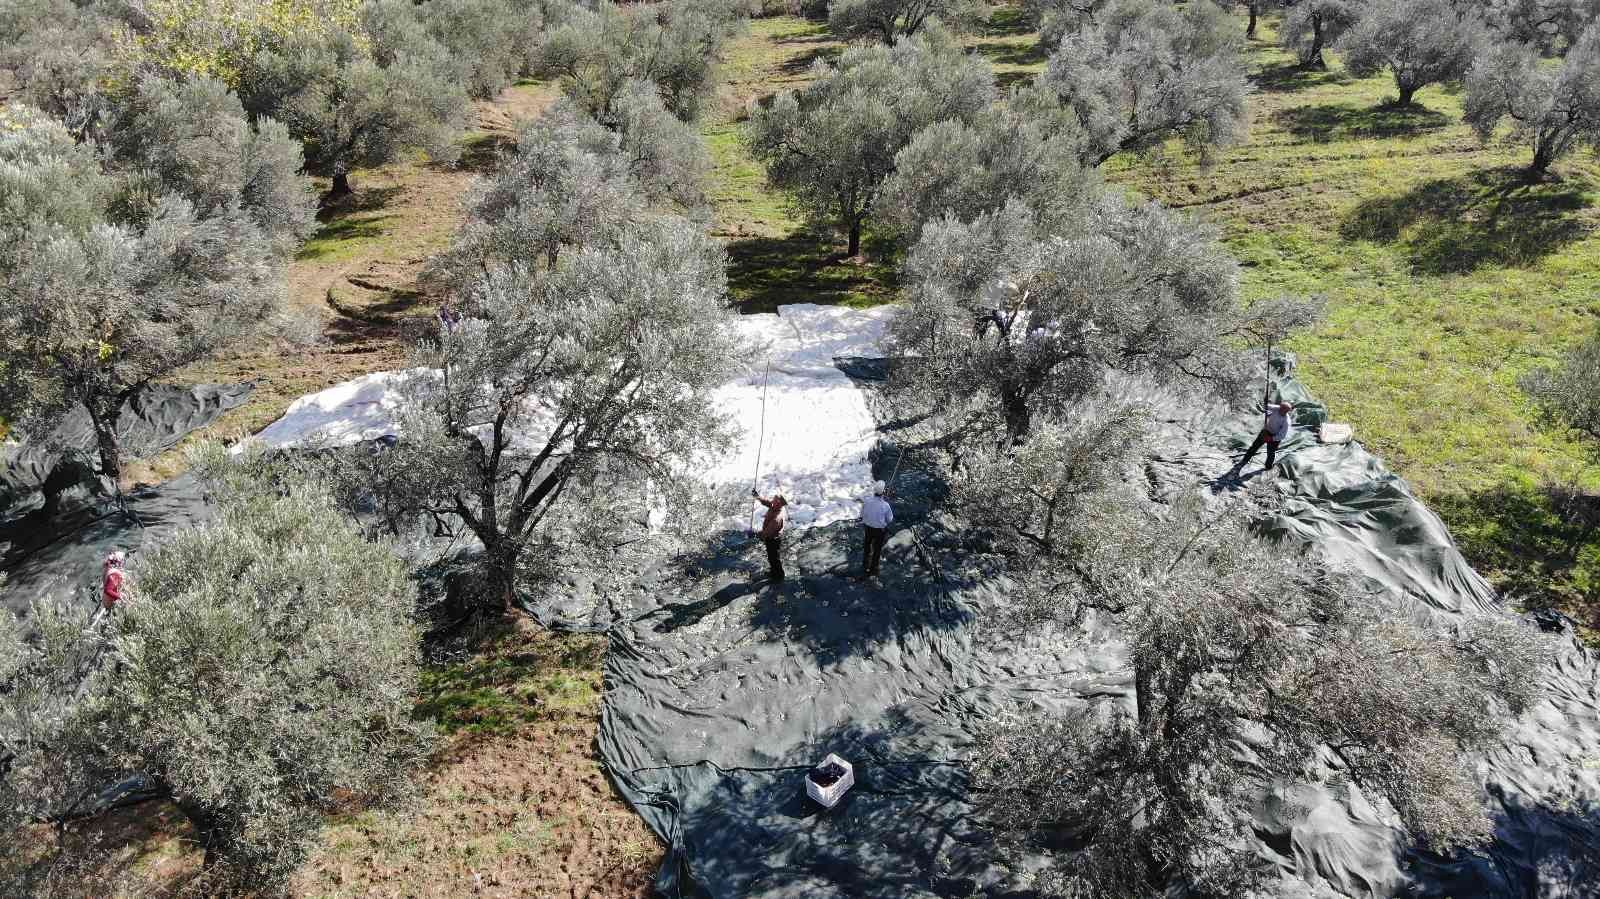 (Özel) Zeytin hasadı drone ile havadan görüntülendi #balikesir